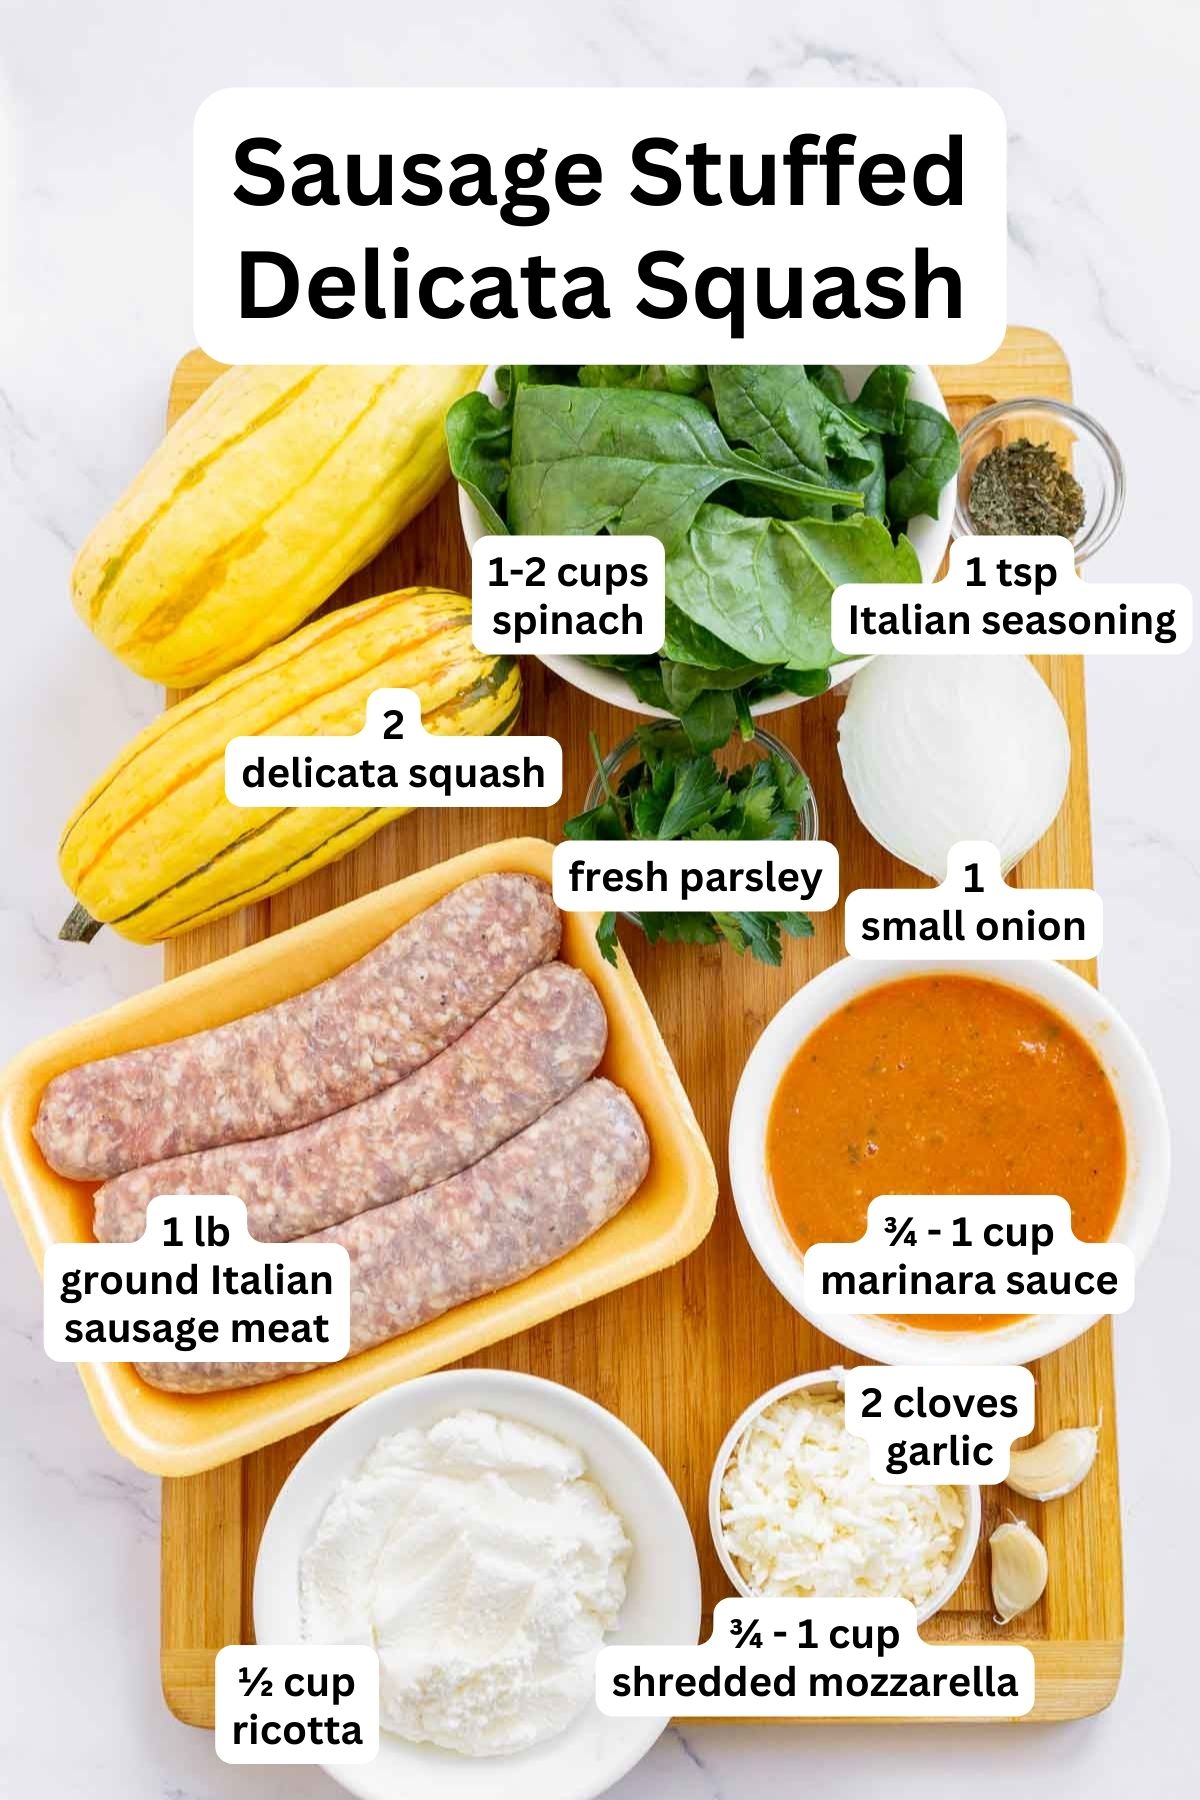 Ingredients to make sausage stuffed delicata squash.